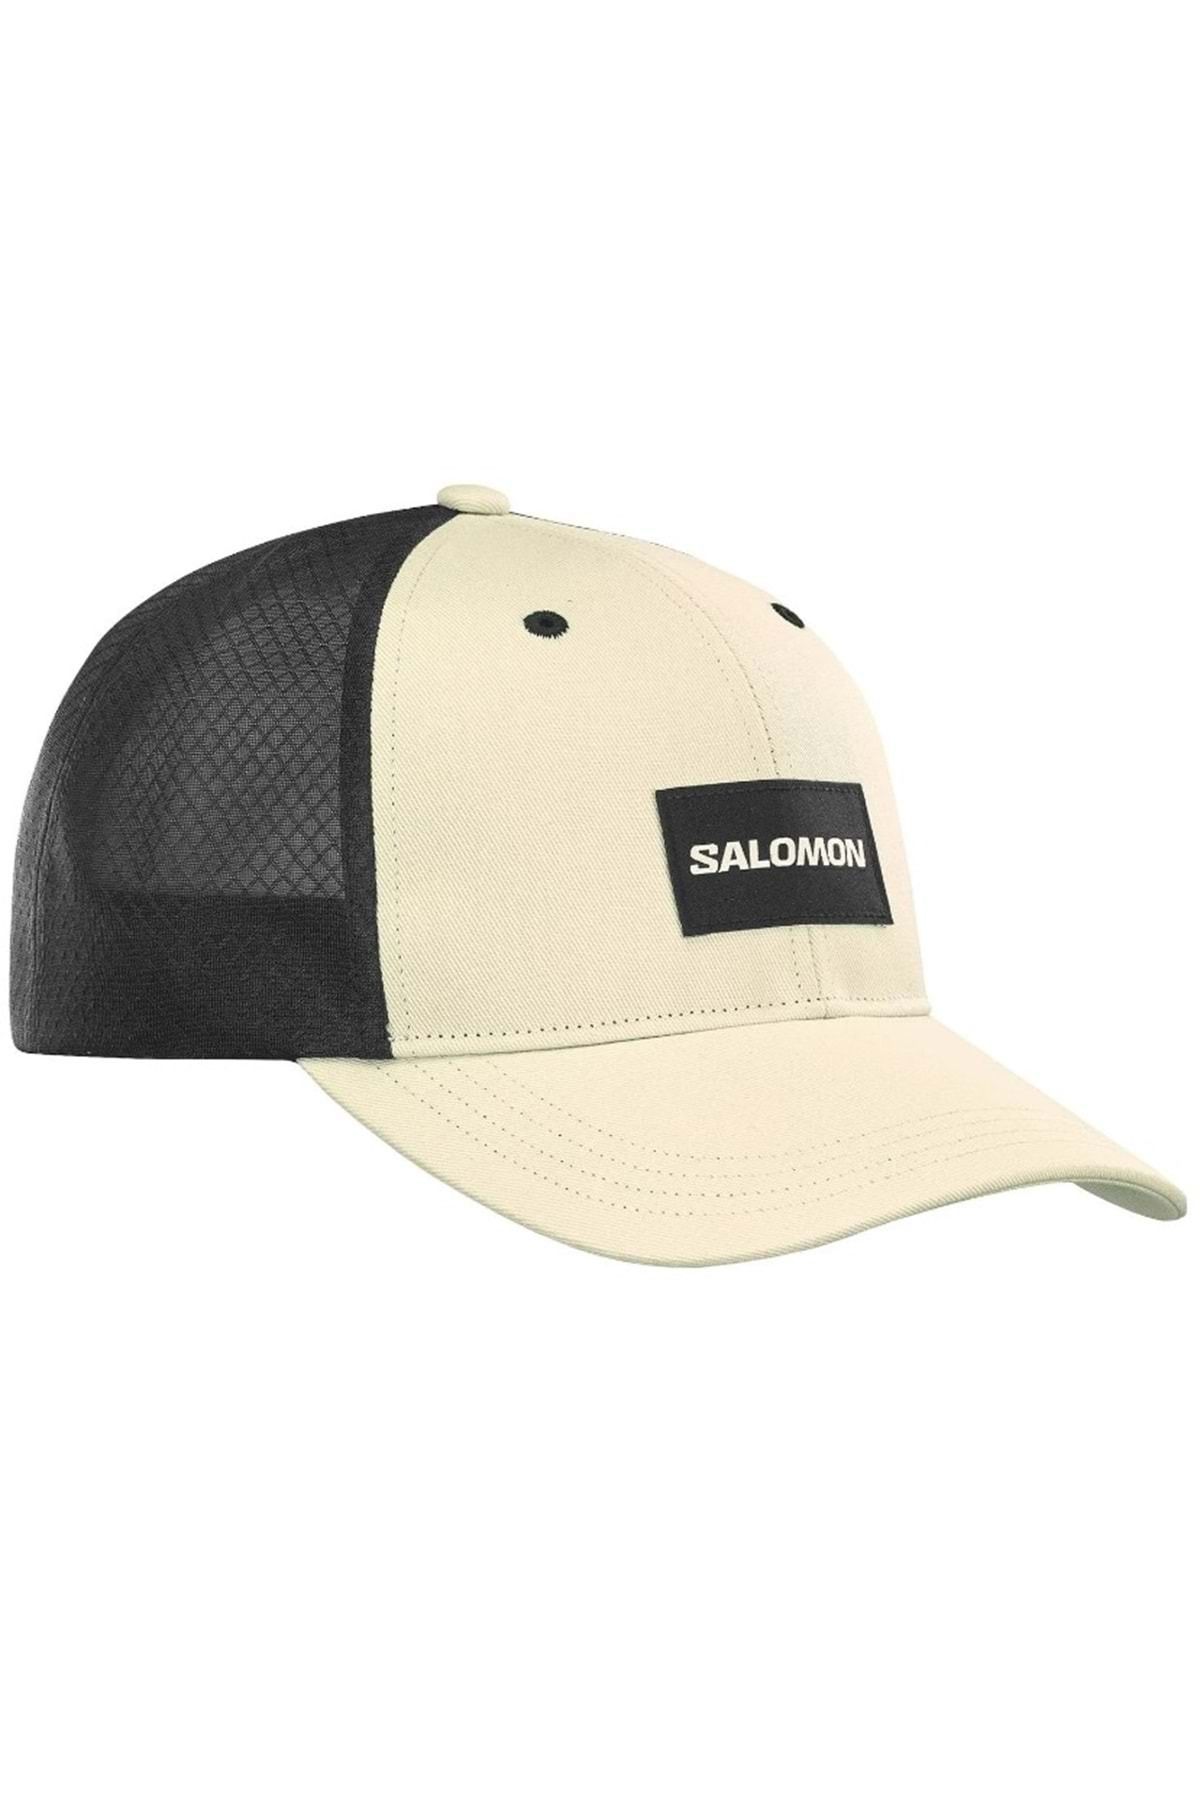 Salomon Trucker Curved Cap Unisex Şapka Bej